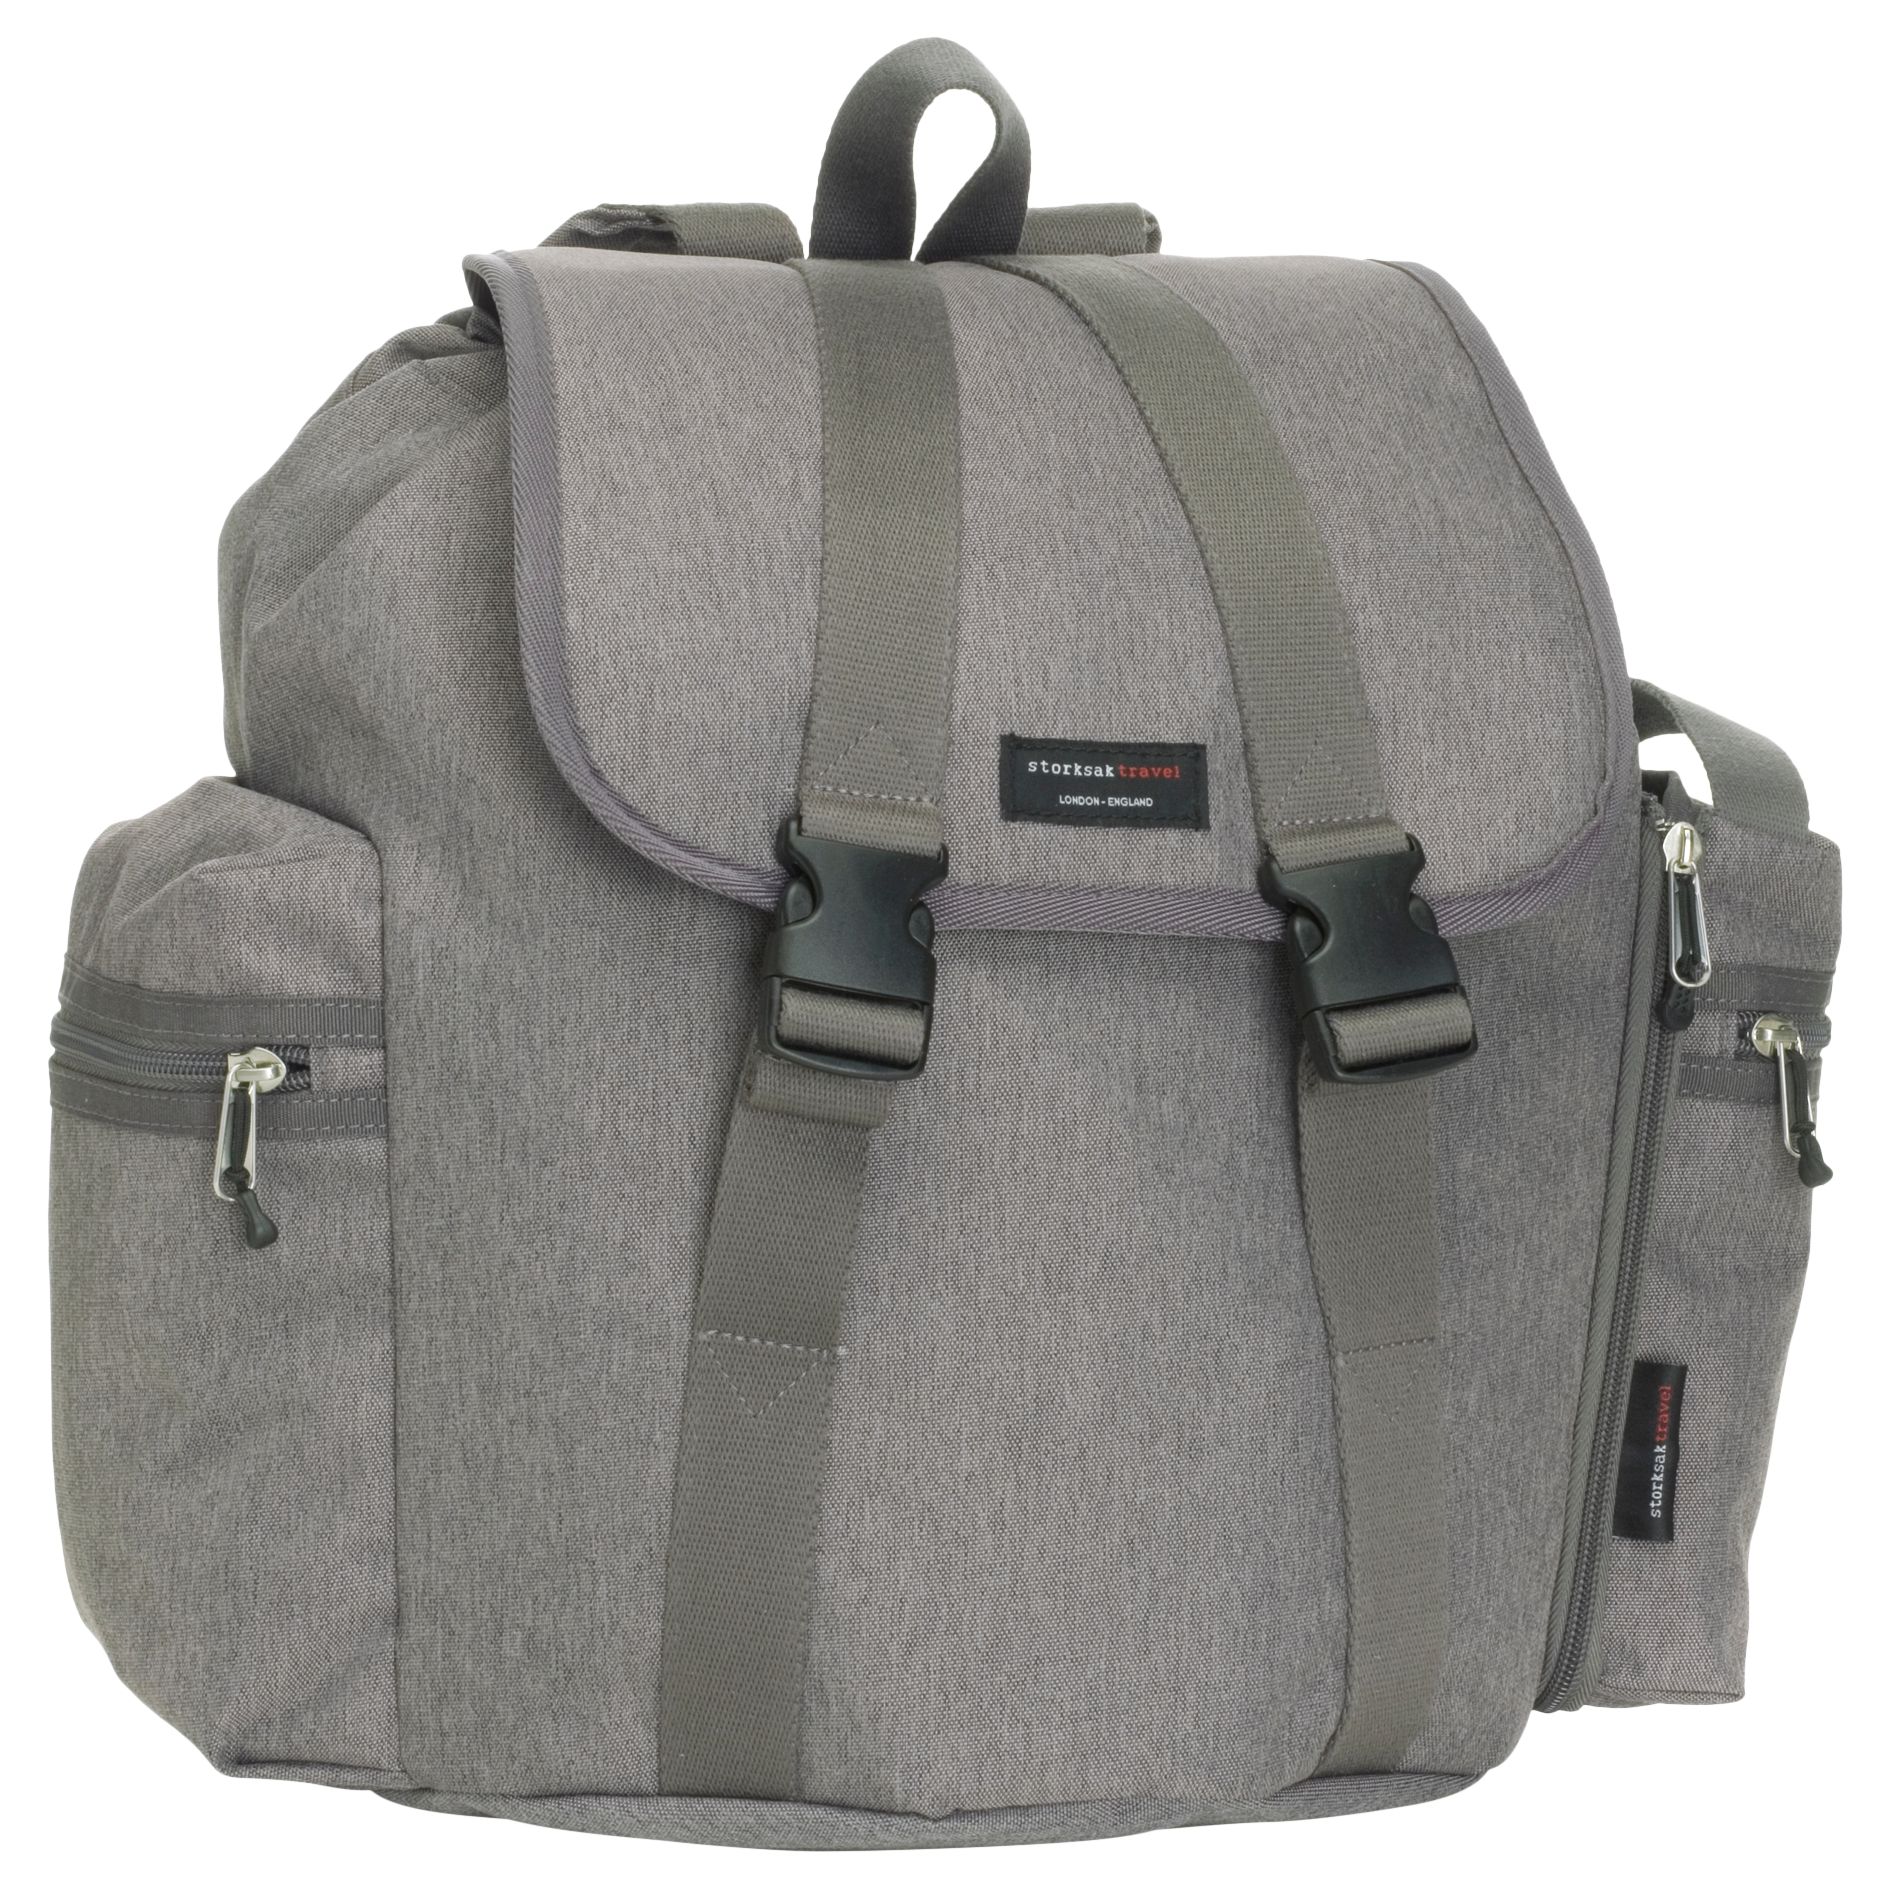 Image of Storksak Travel Backpack Bag